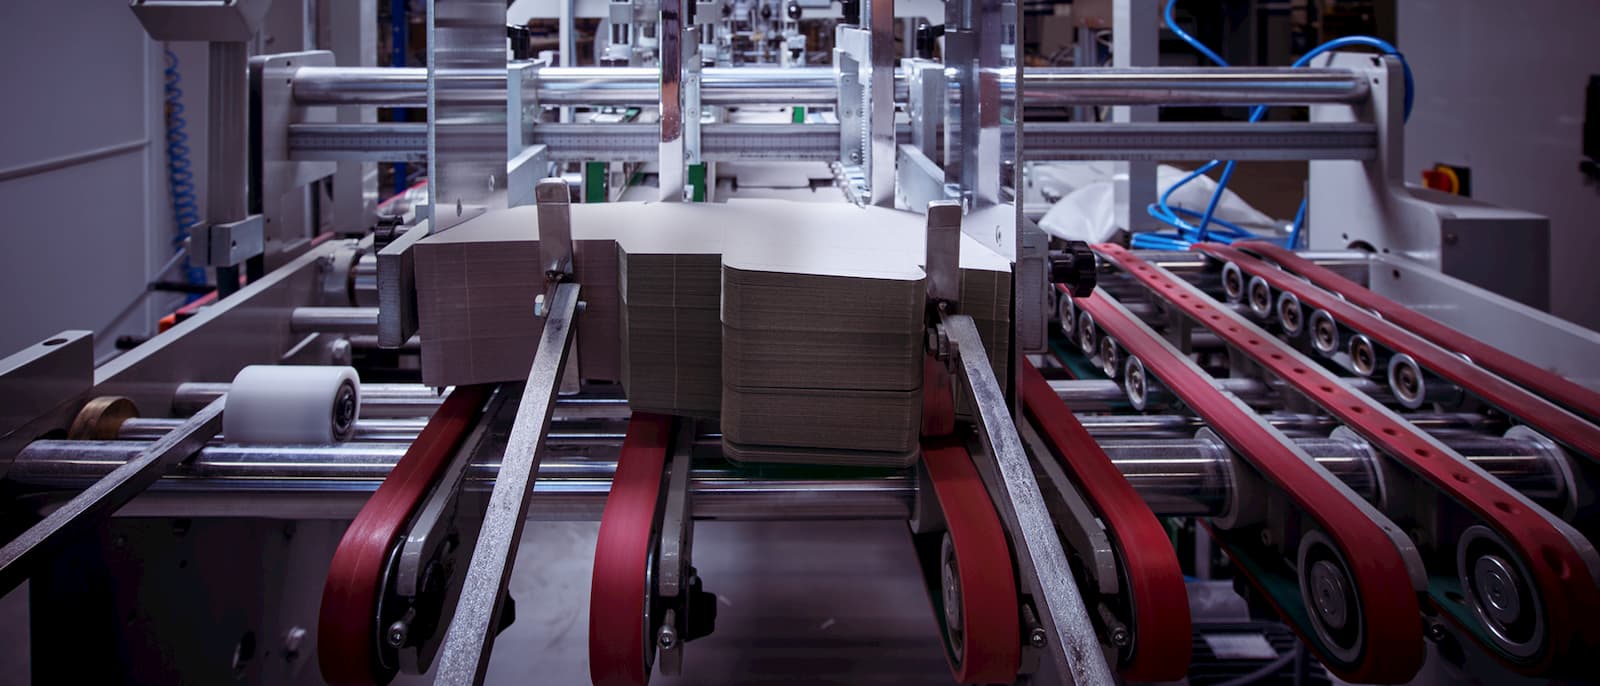 Bobst folder-gluer machine for postpress finishing of packaging